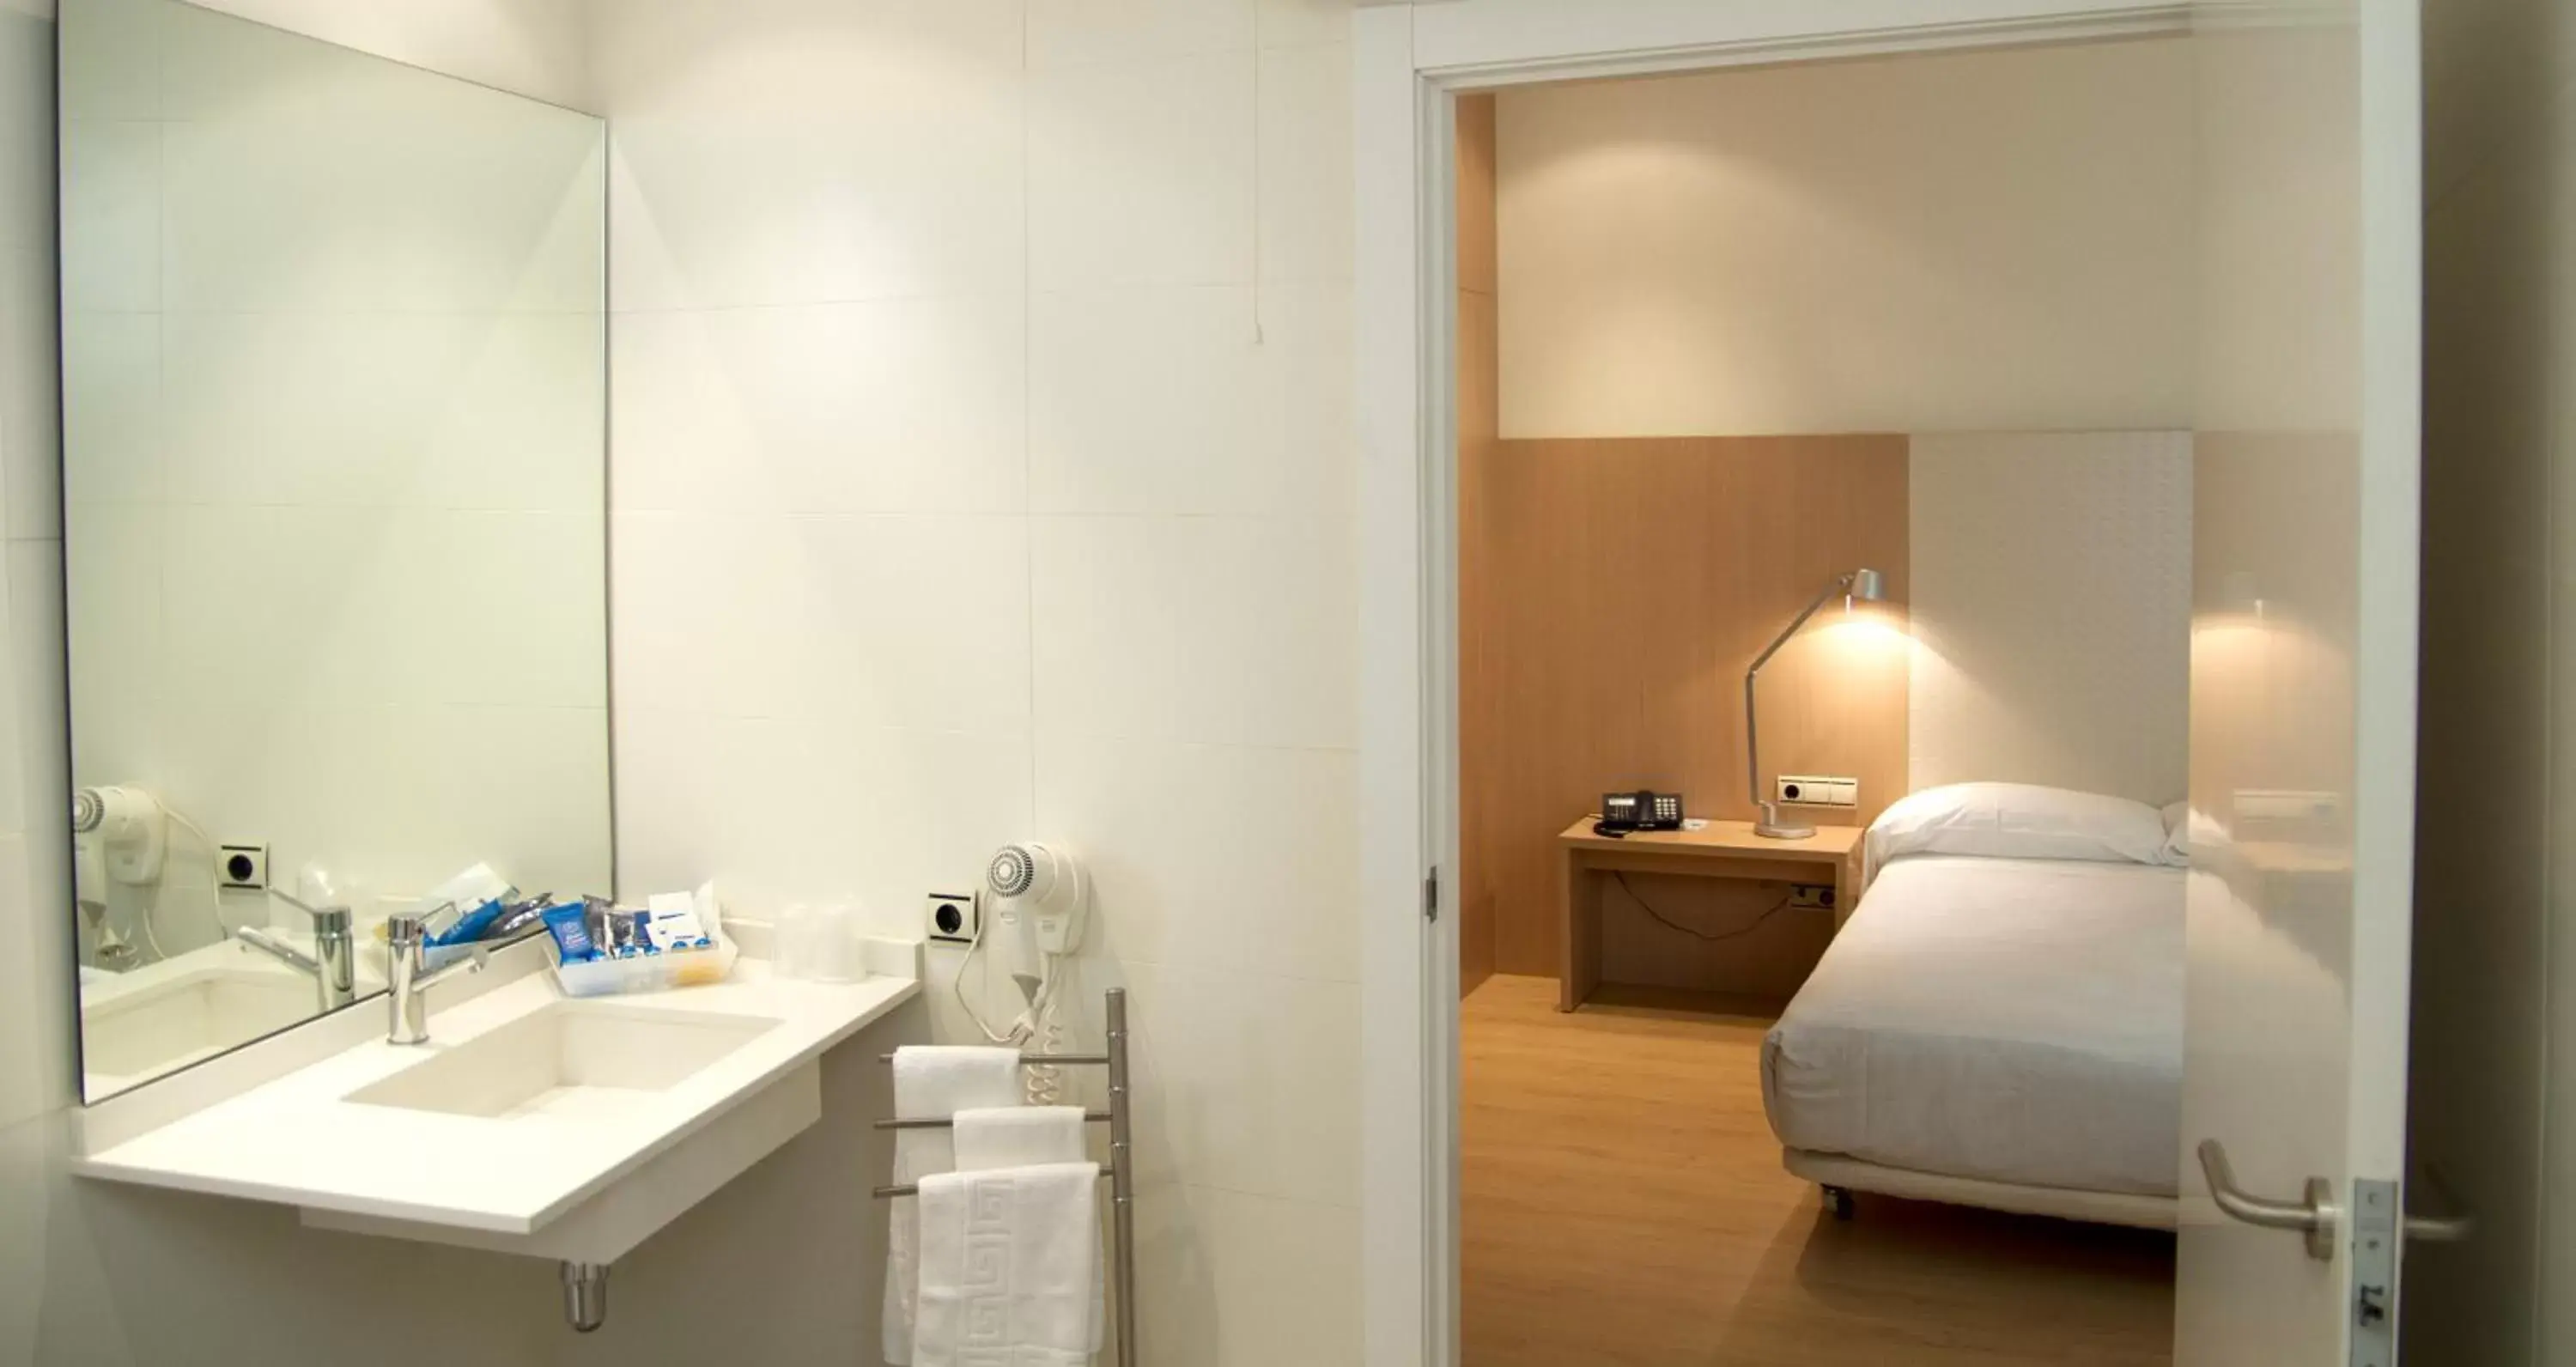 Bedroom, Bathroom in Hotel Checkin Valencia Ciscar